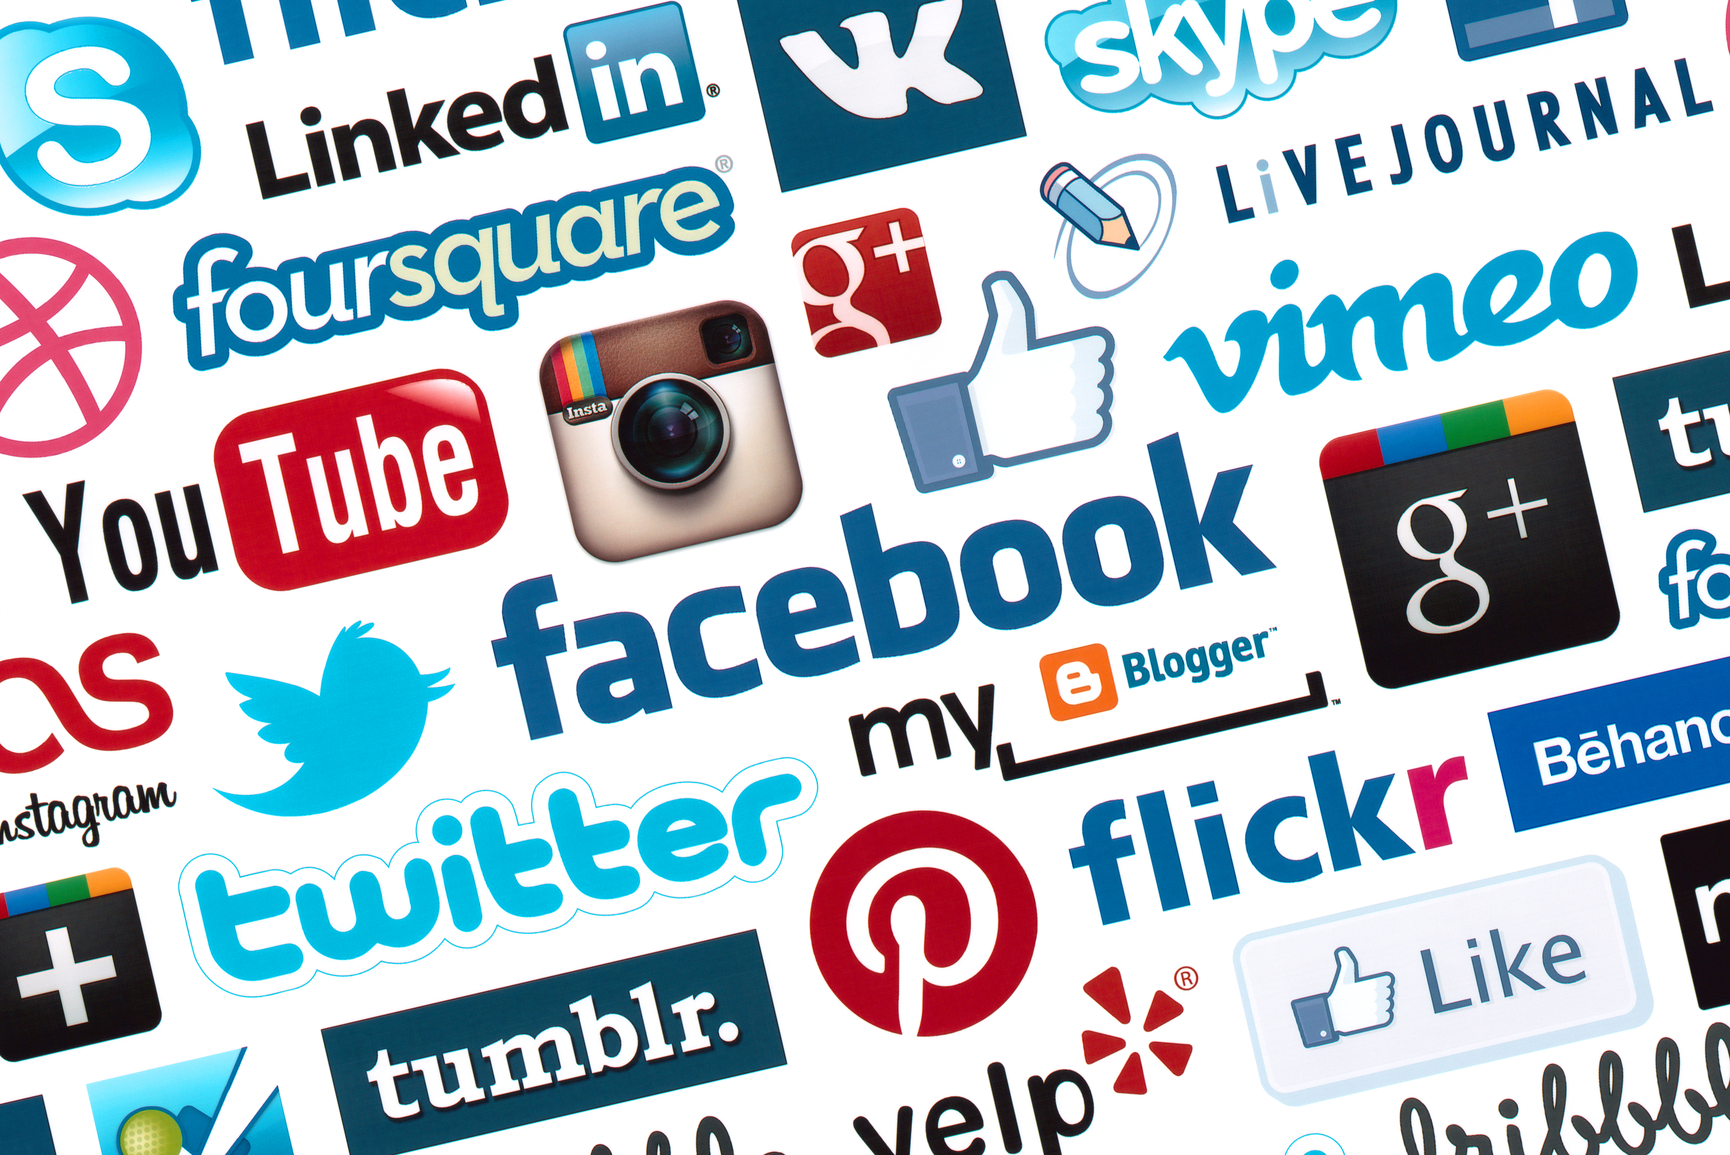 США: Молоді демократи більш активні у соціальних медіа, ніж республіканці